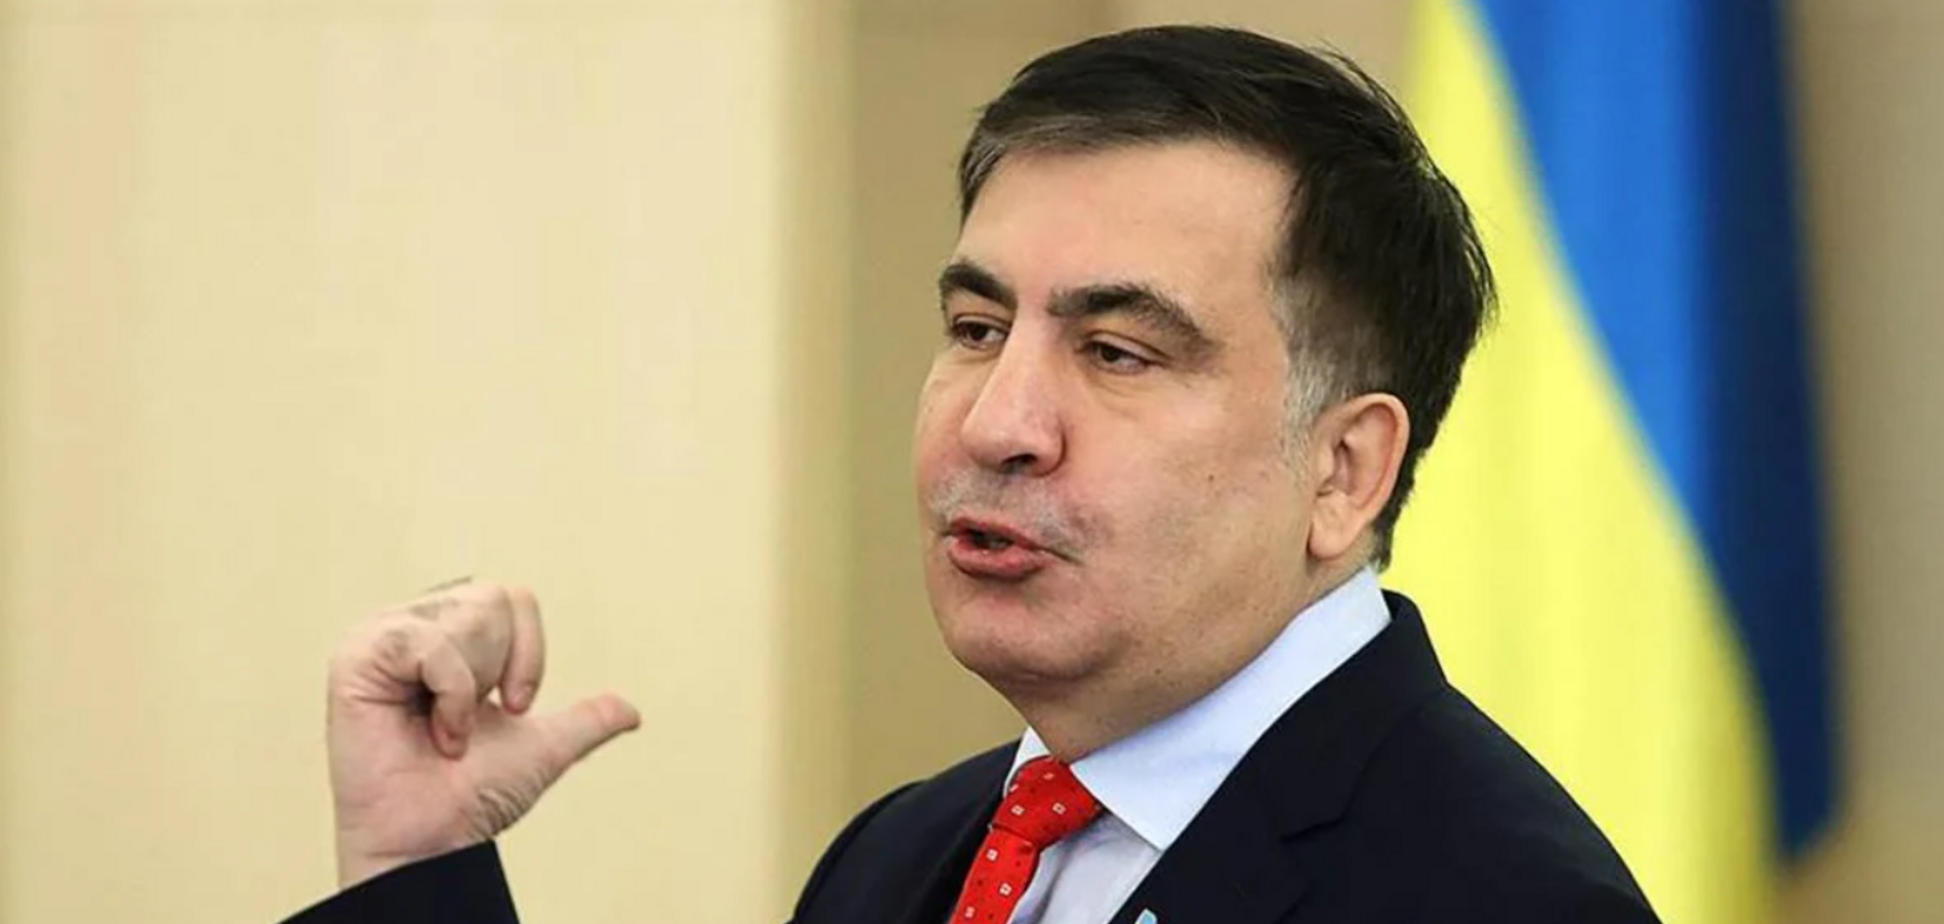 Зеленский сделает Саакашвили главой Нацсовета по реформам